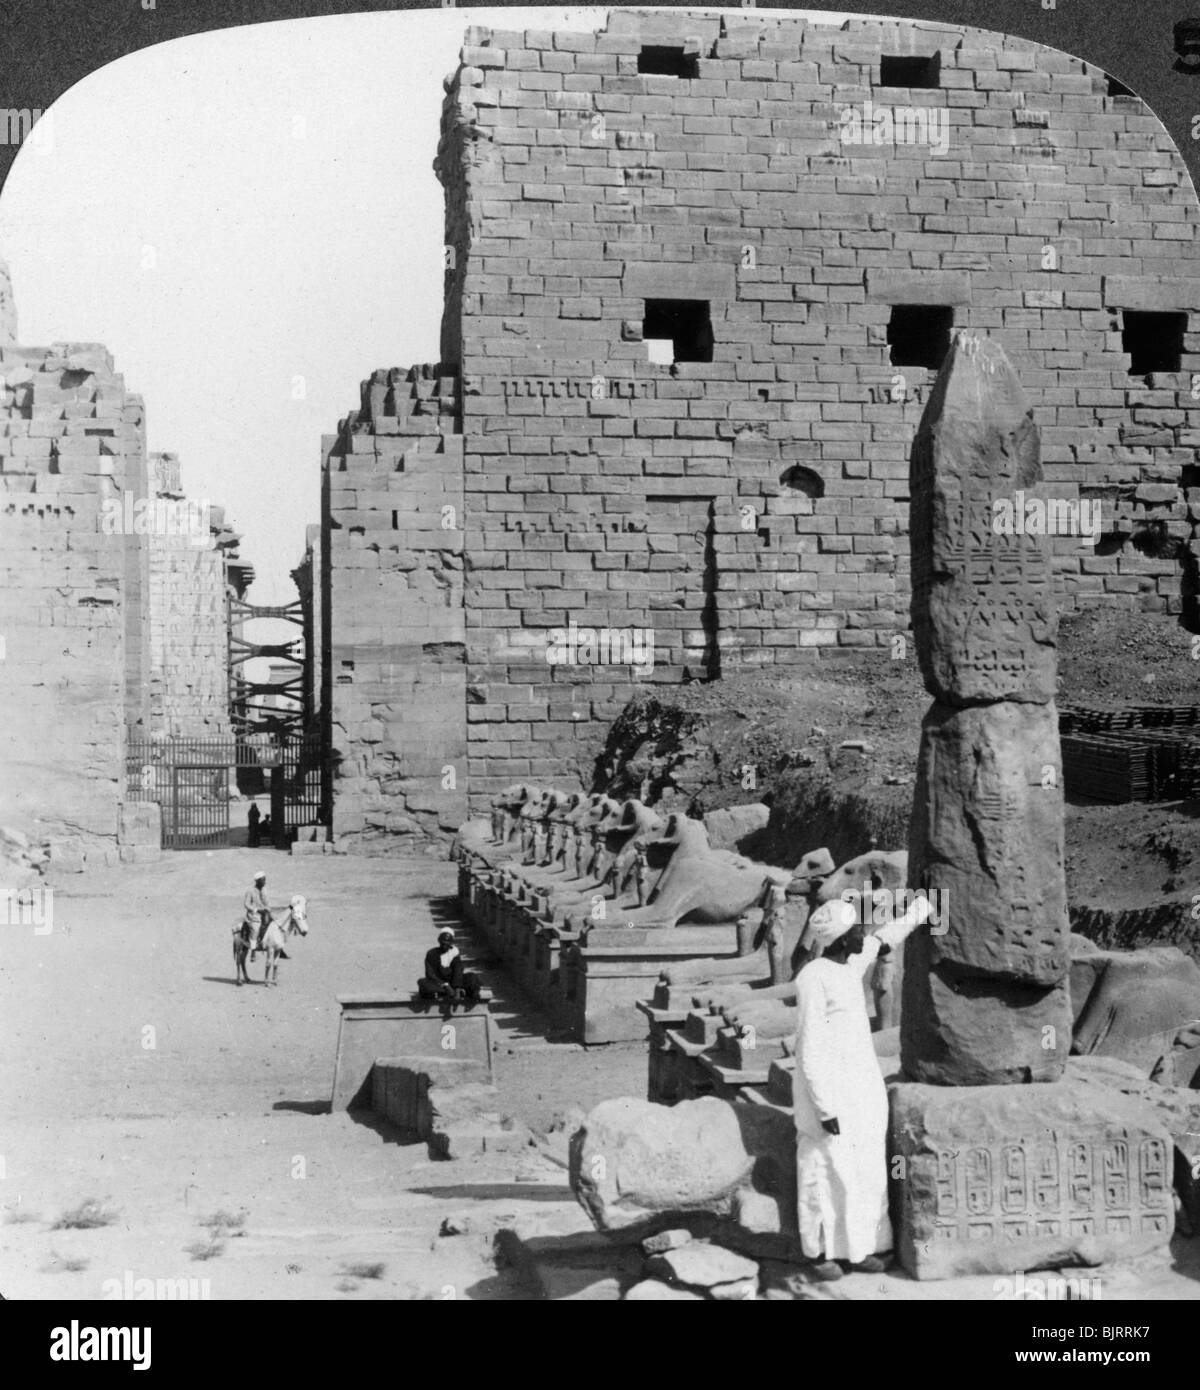 "Avenue des images sacrées après excavation, Karnak, Thèbes, Égypte", c1900. Artiste : Underwood & Underwood Banque D'Images